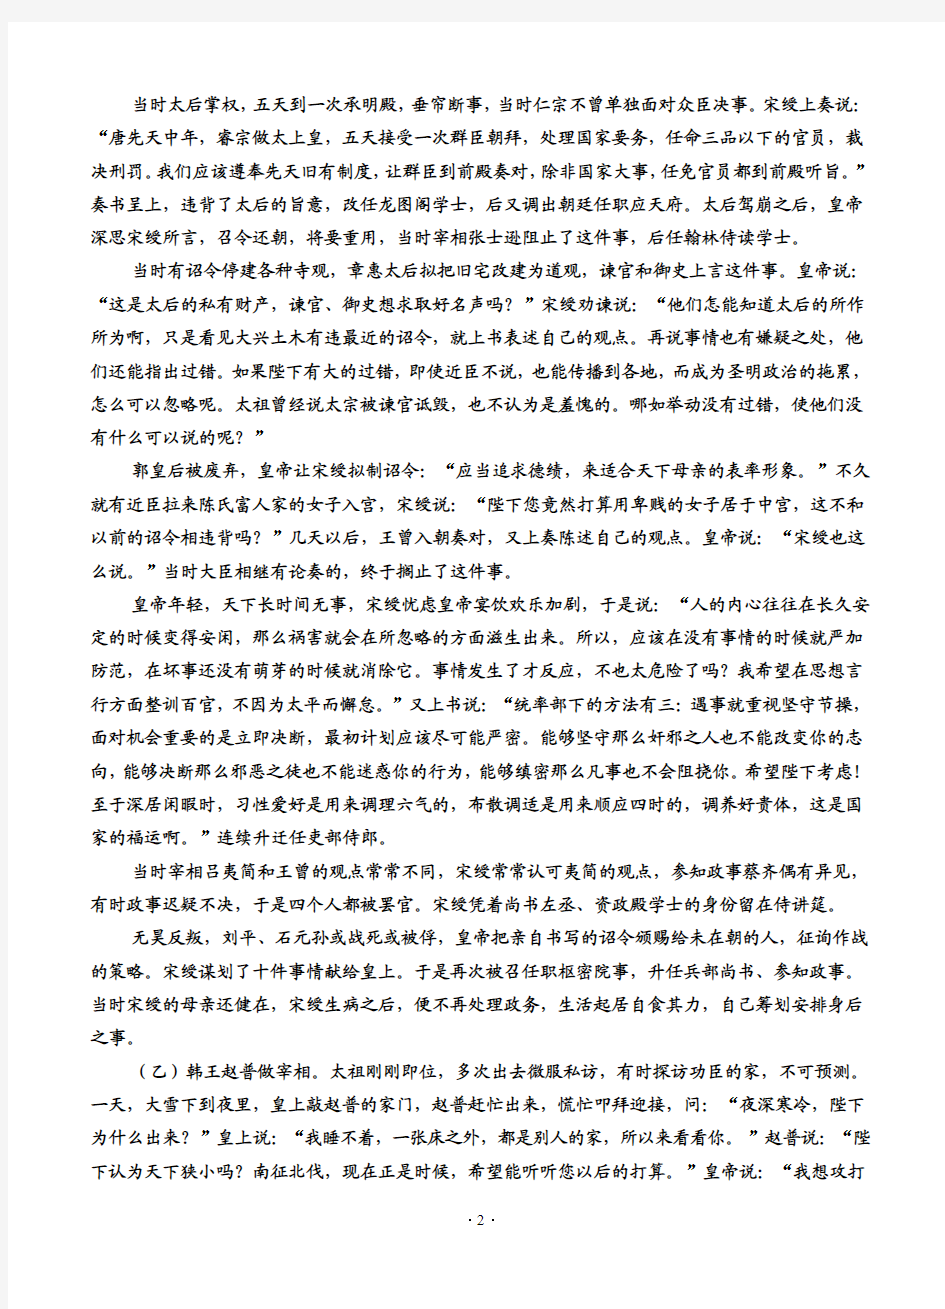 河北衡水中学2014年高考语文模拟试题(答案)